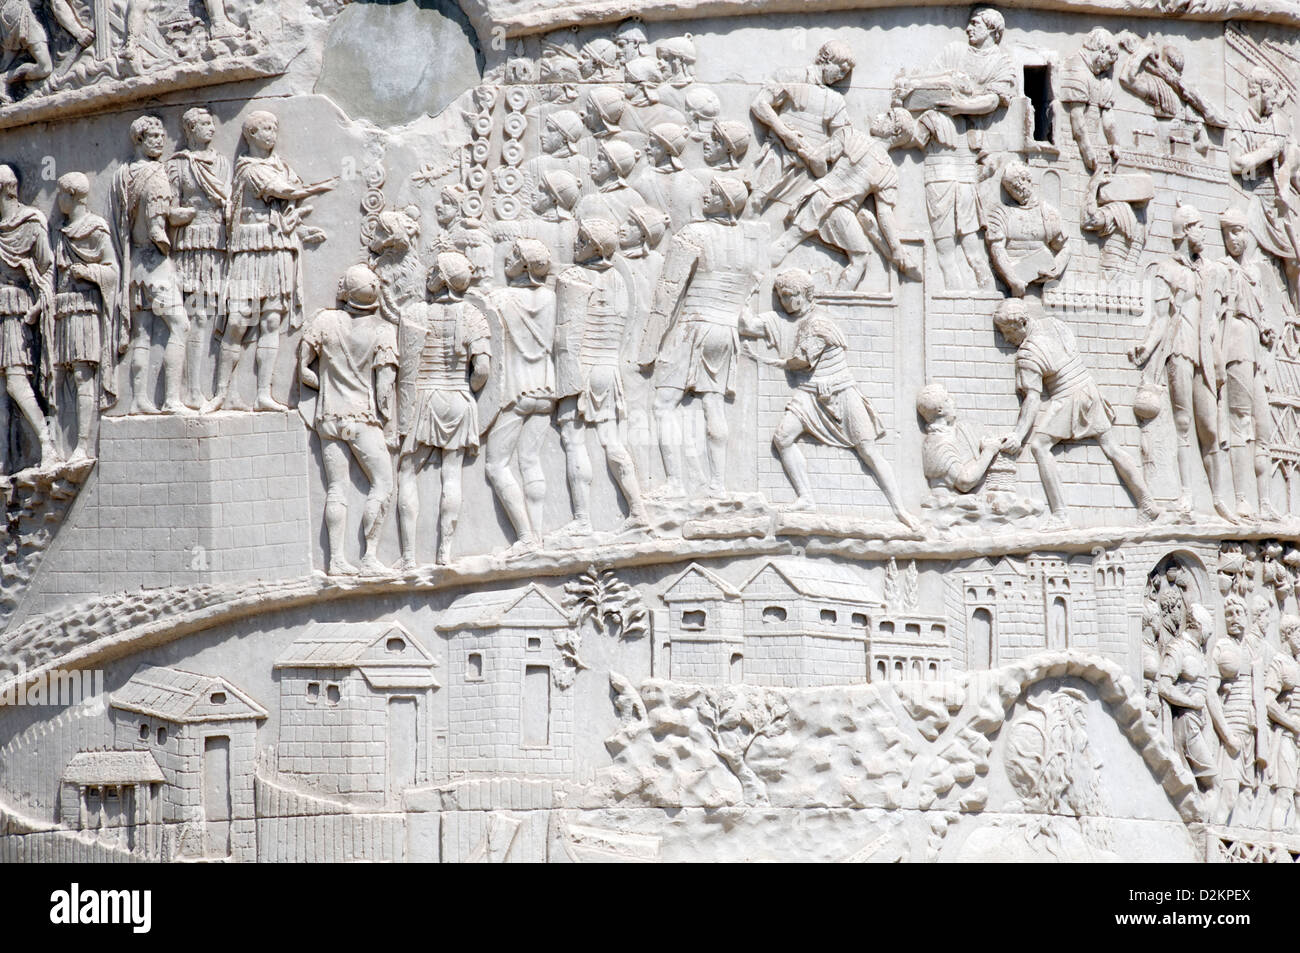 Rome. L'Italie. Vue rapprochée de l'art sculptural détail de la colonne Trajane sur le forum de l'empereur romain Trajan Banque D'Images